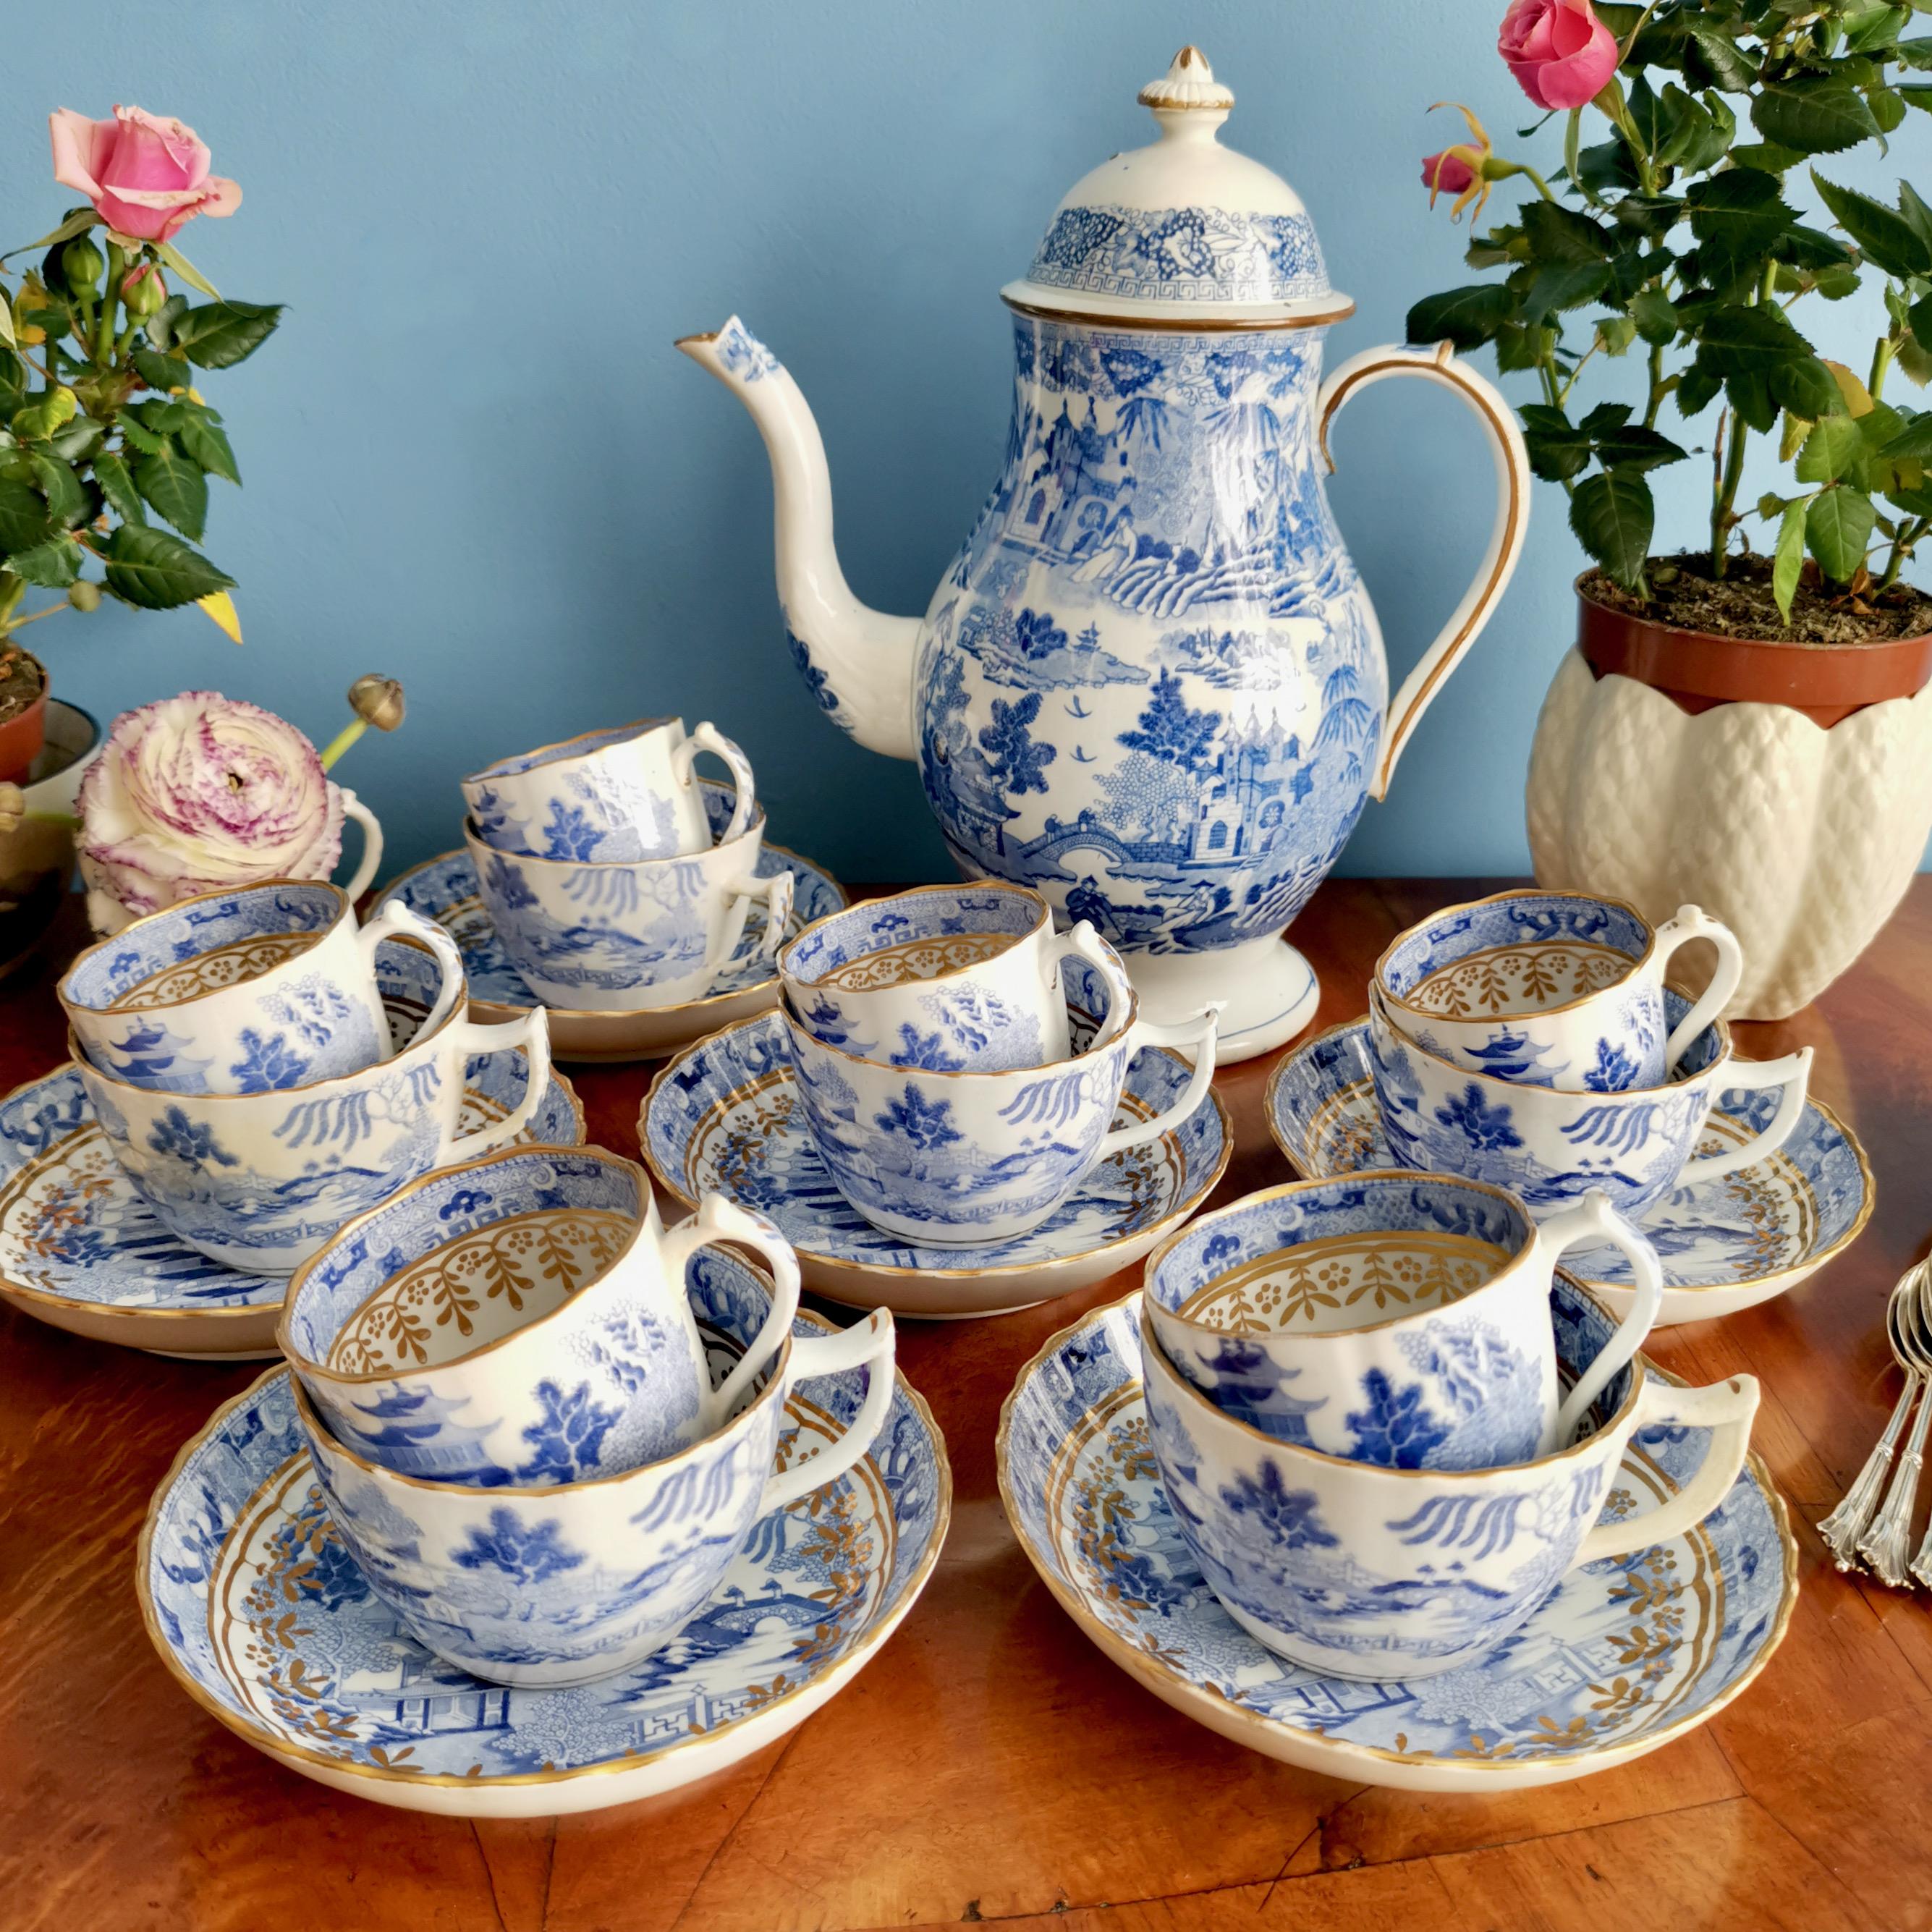 Magnifique service à thé et à café pour 6 personnes avec le magnifique motif Pagode en transfert bleu et blanc. La cafetière a été fabriquée par Rathbone et les tasses et soucoupes par Miles Mason. 

J'ai aussi listé le set de tasses à thé trios et